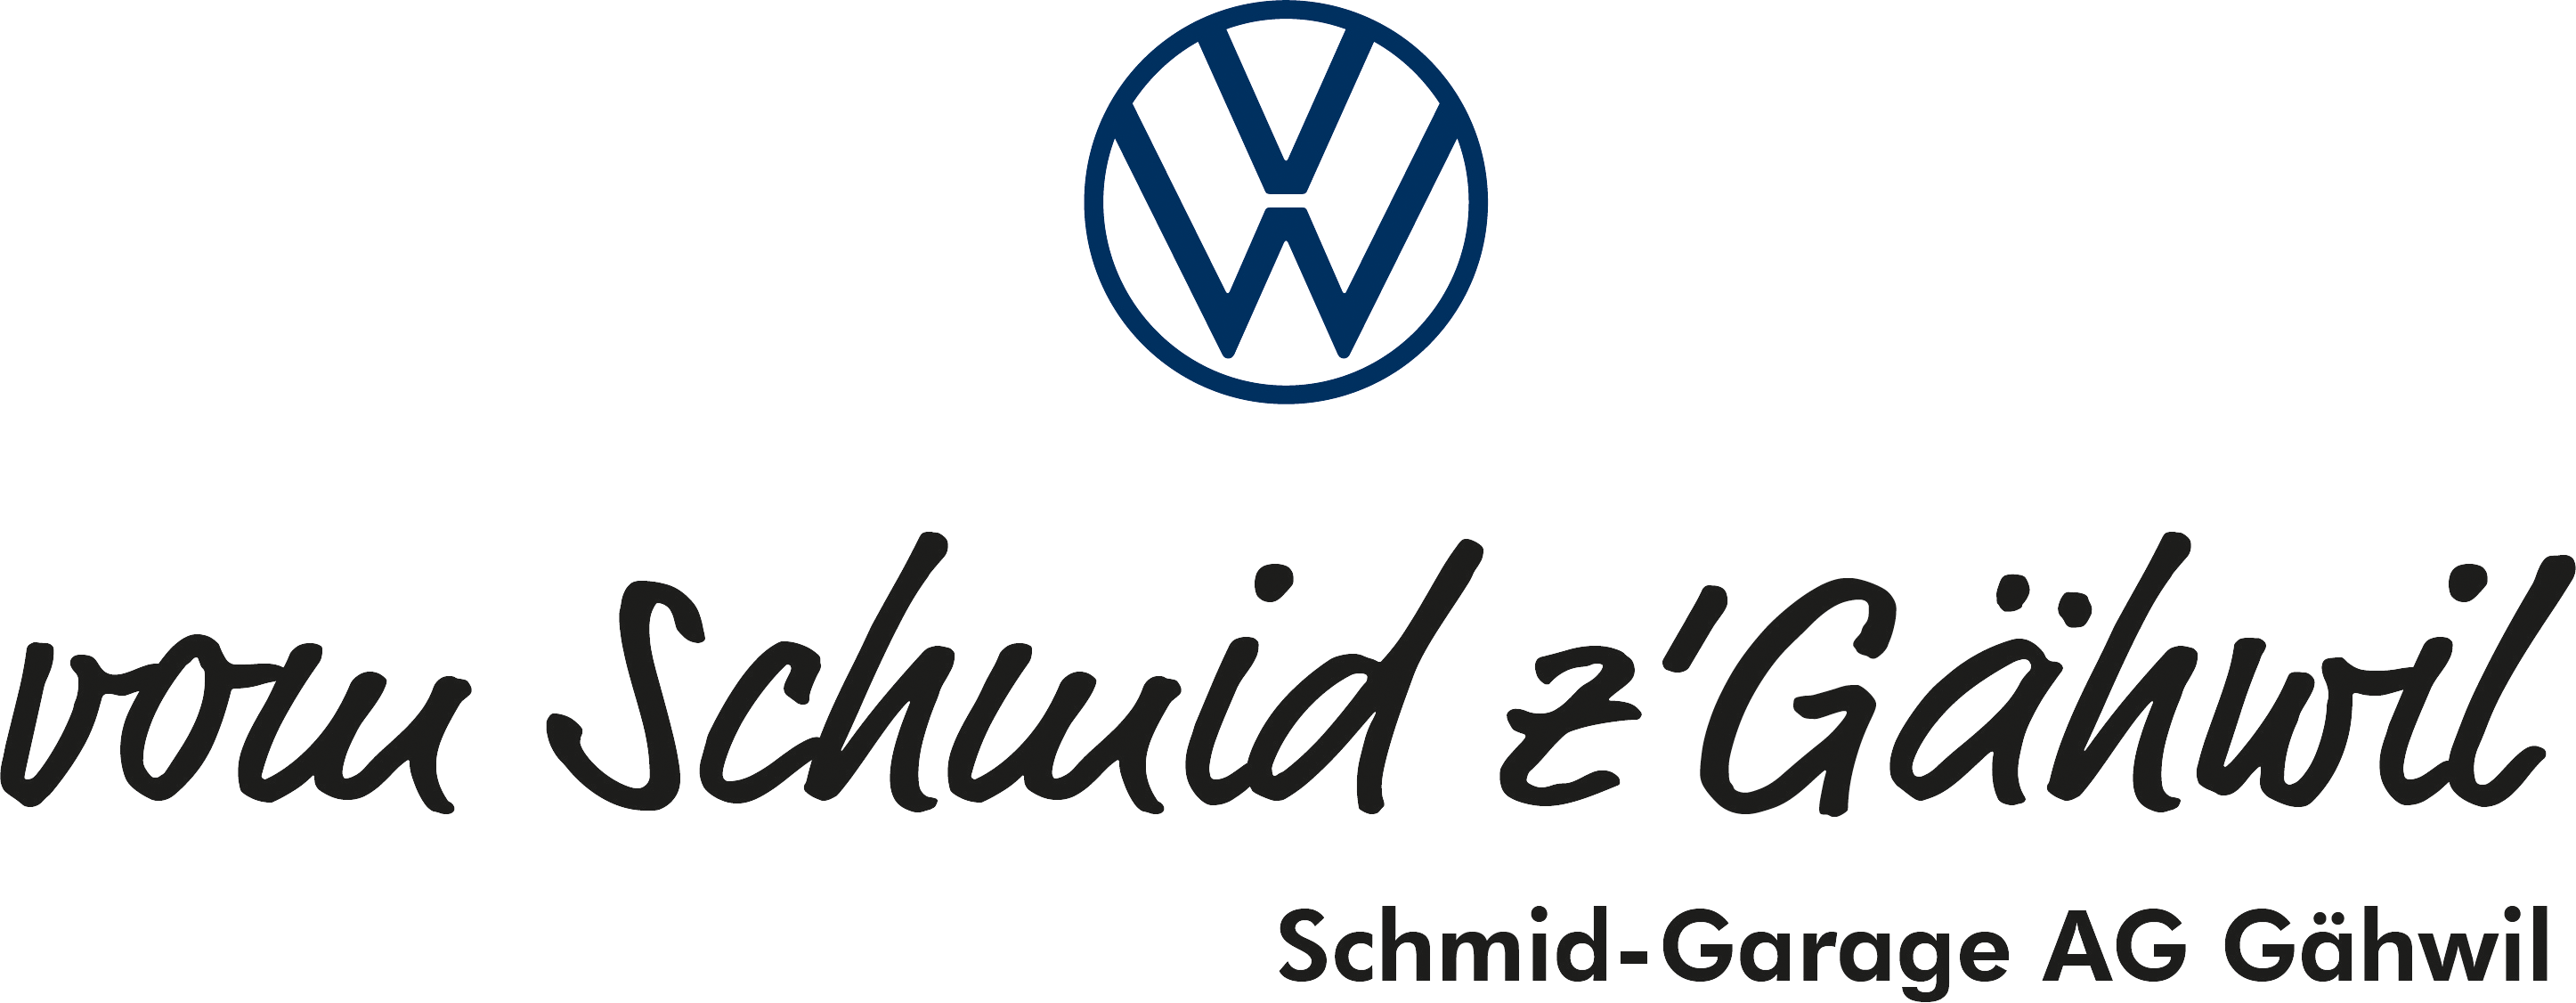 Schmid Garage AG Gäwil